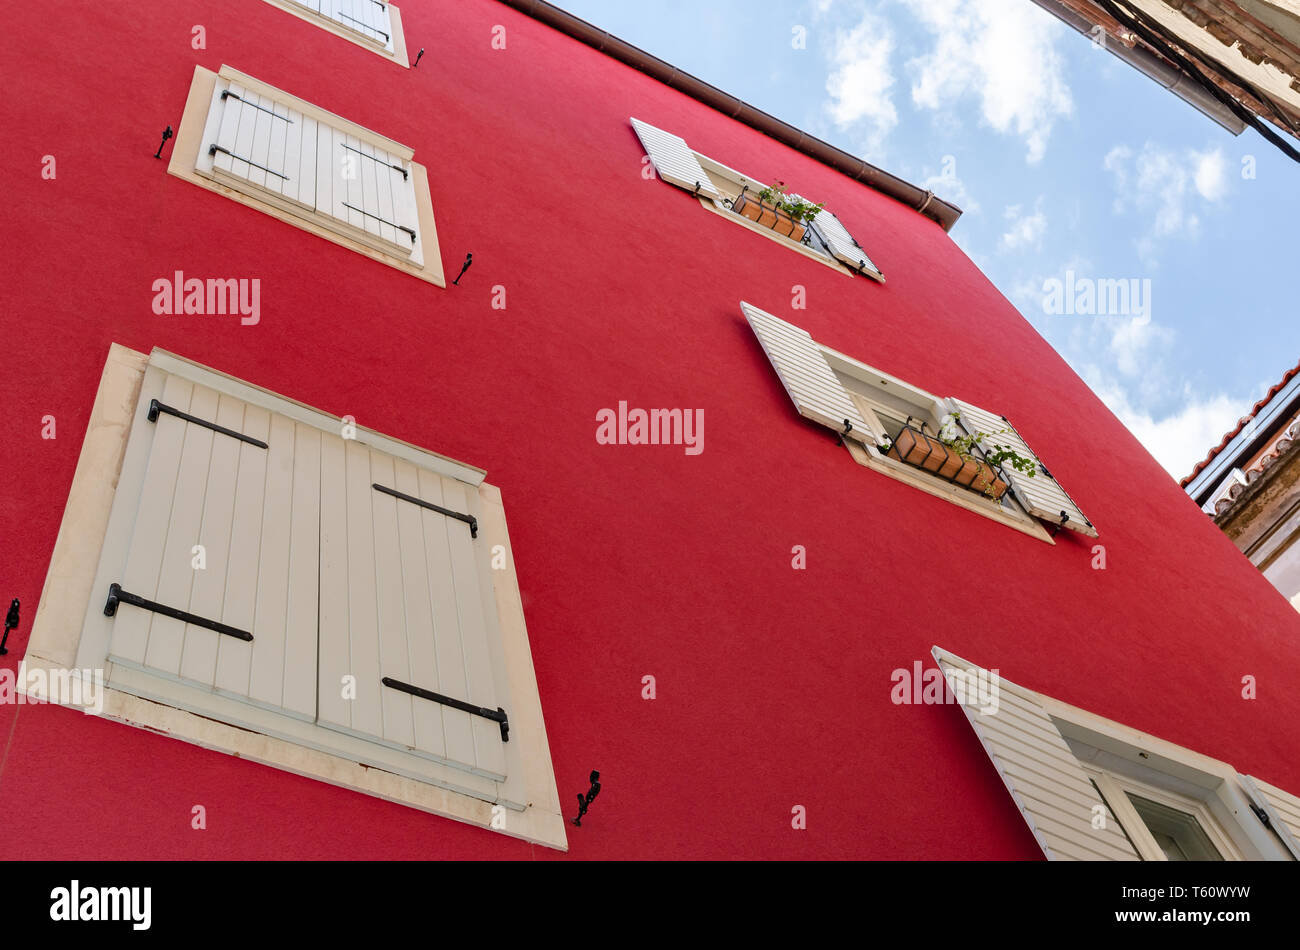 Le mur de la maison est rouge avec des cadres de fenêtre blanc. Banque D'Images